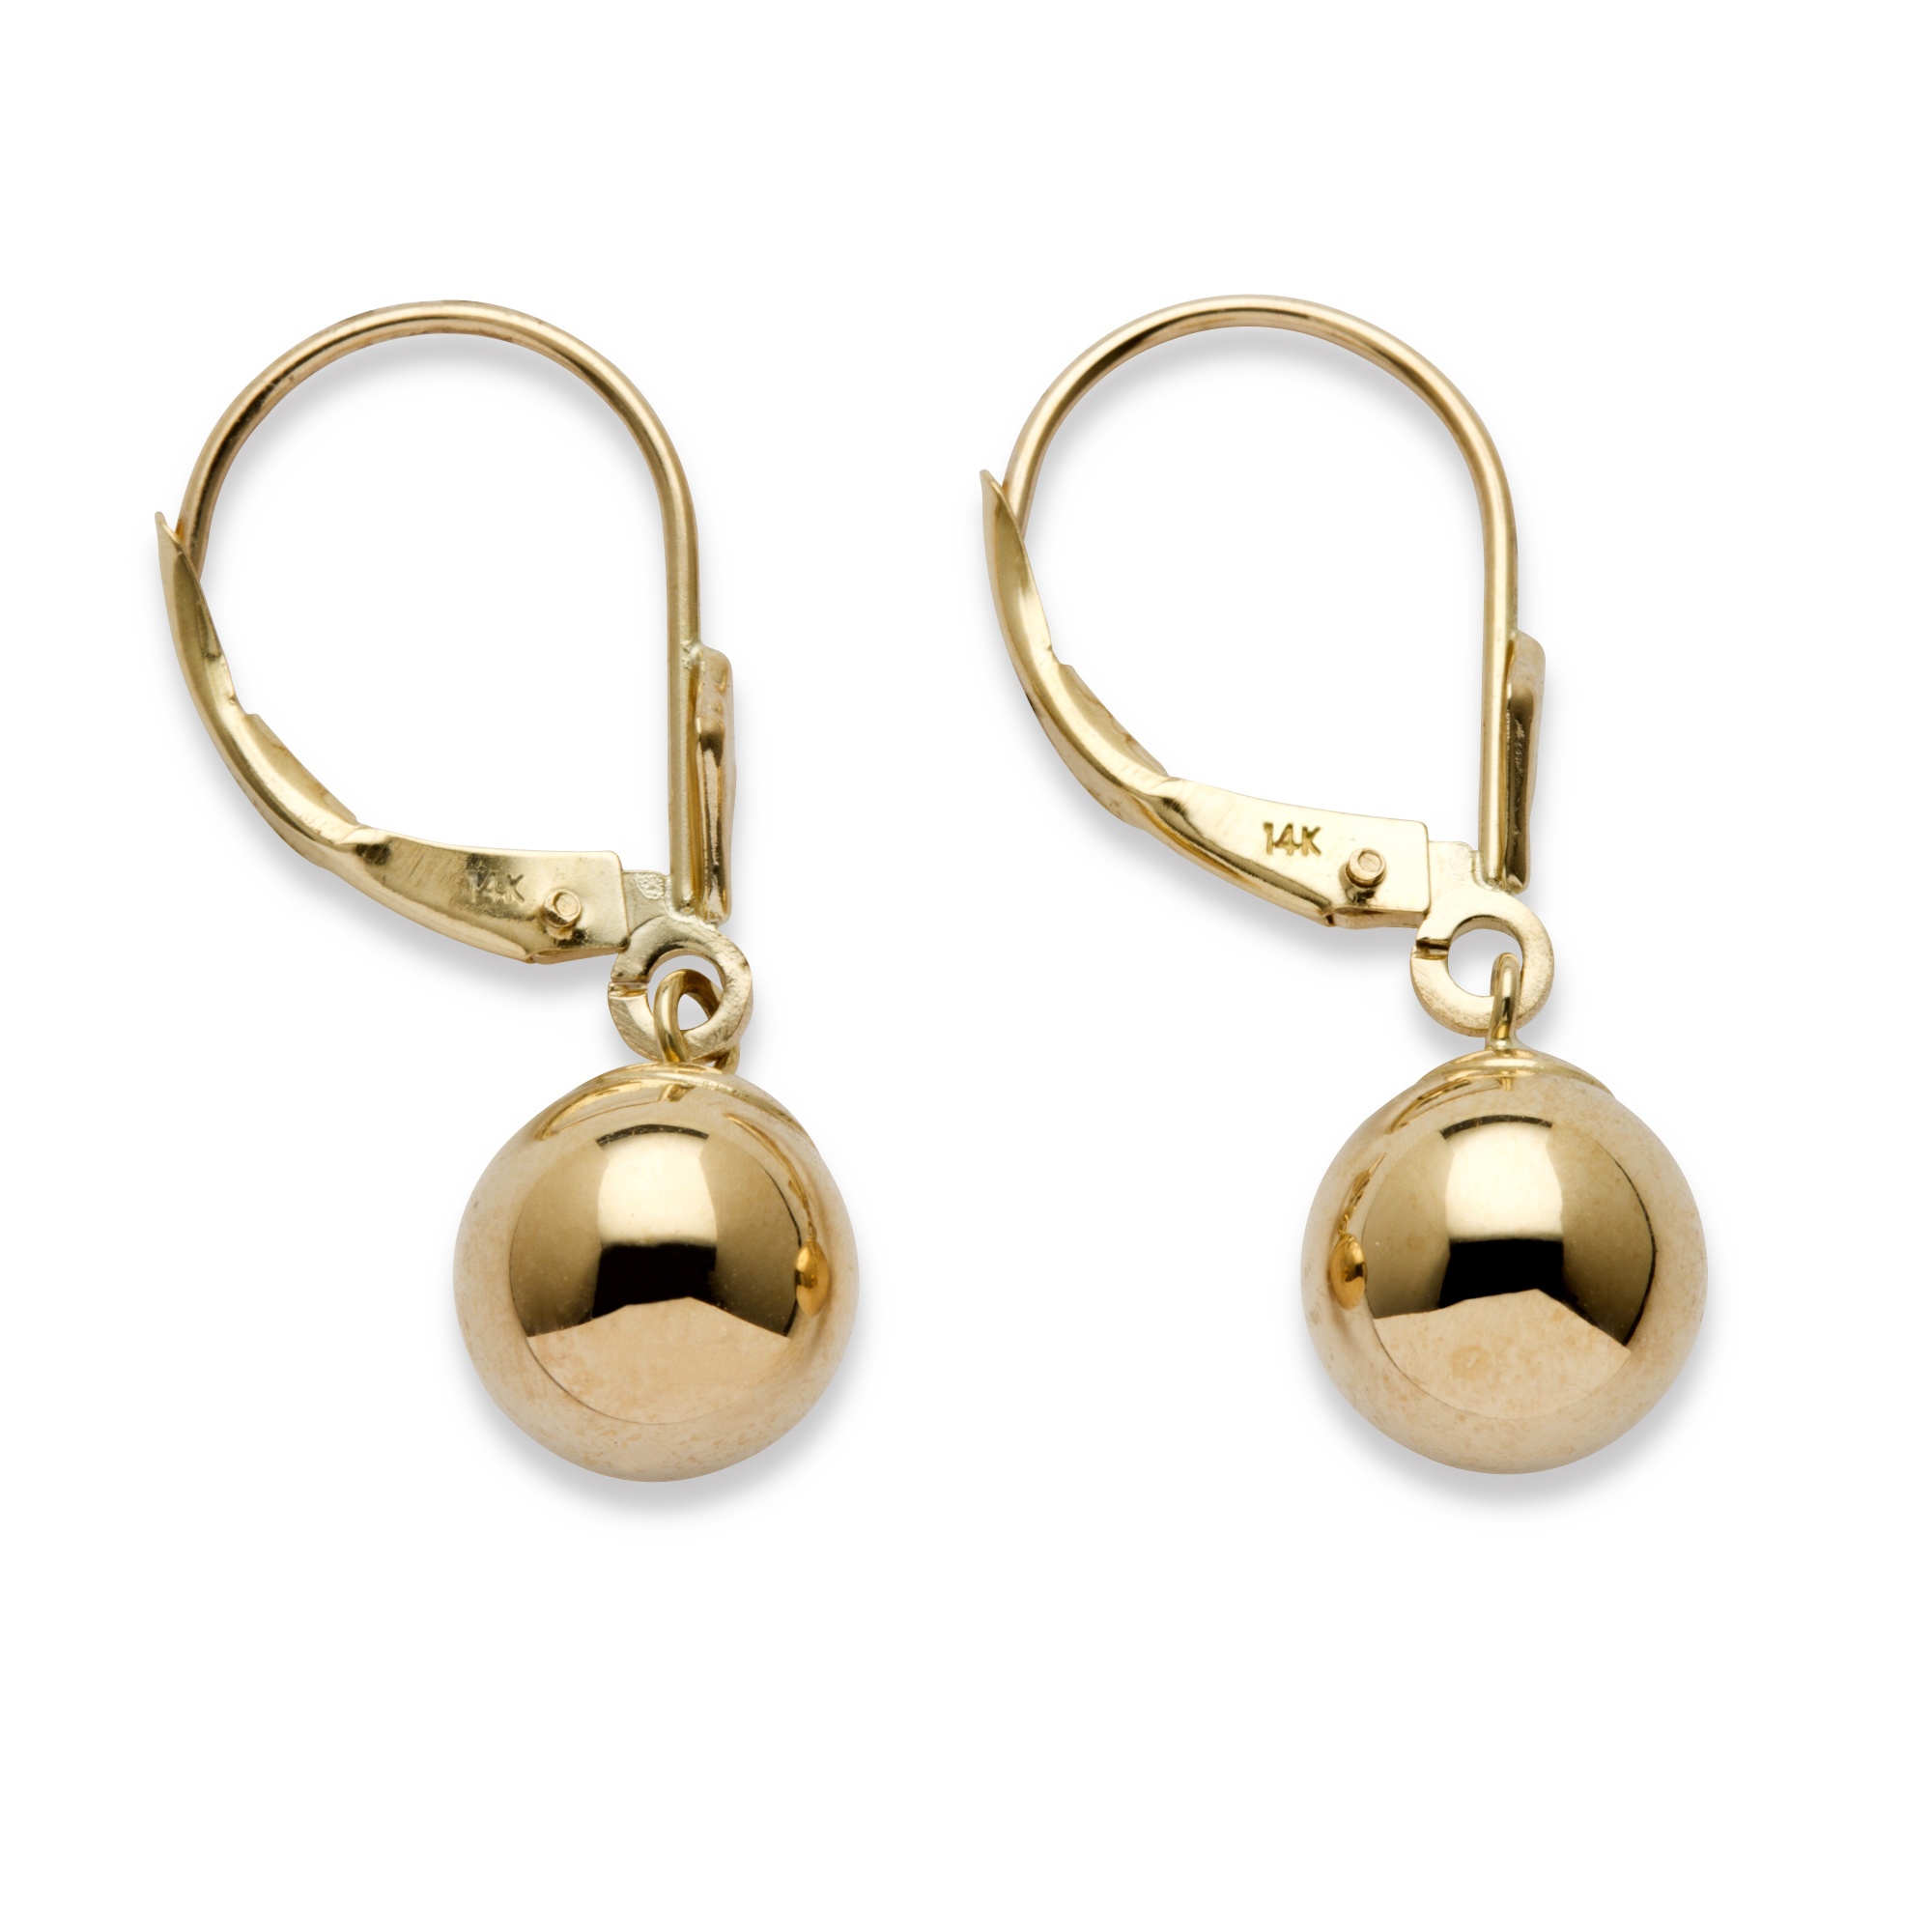 Palmbeach Jewelry Ball Drop Earrings in 14k Yellow Gold | eBay